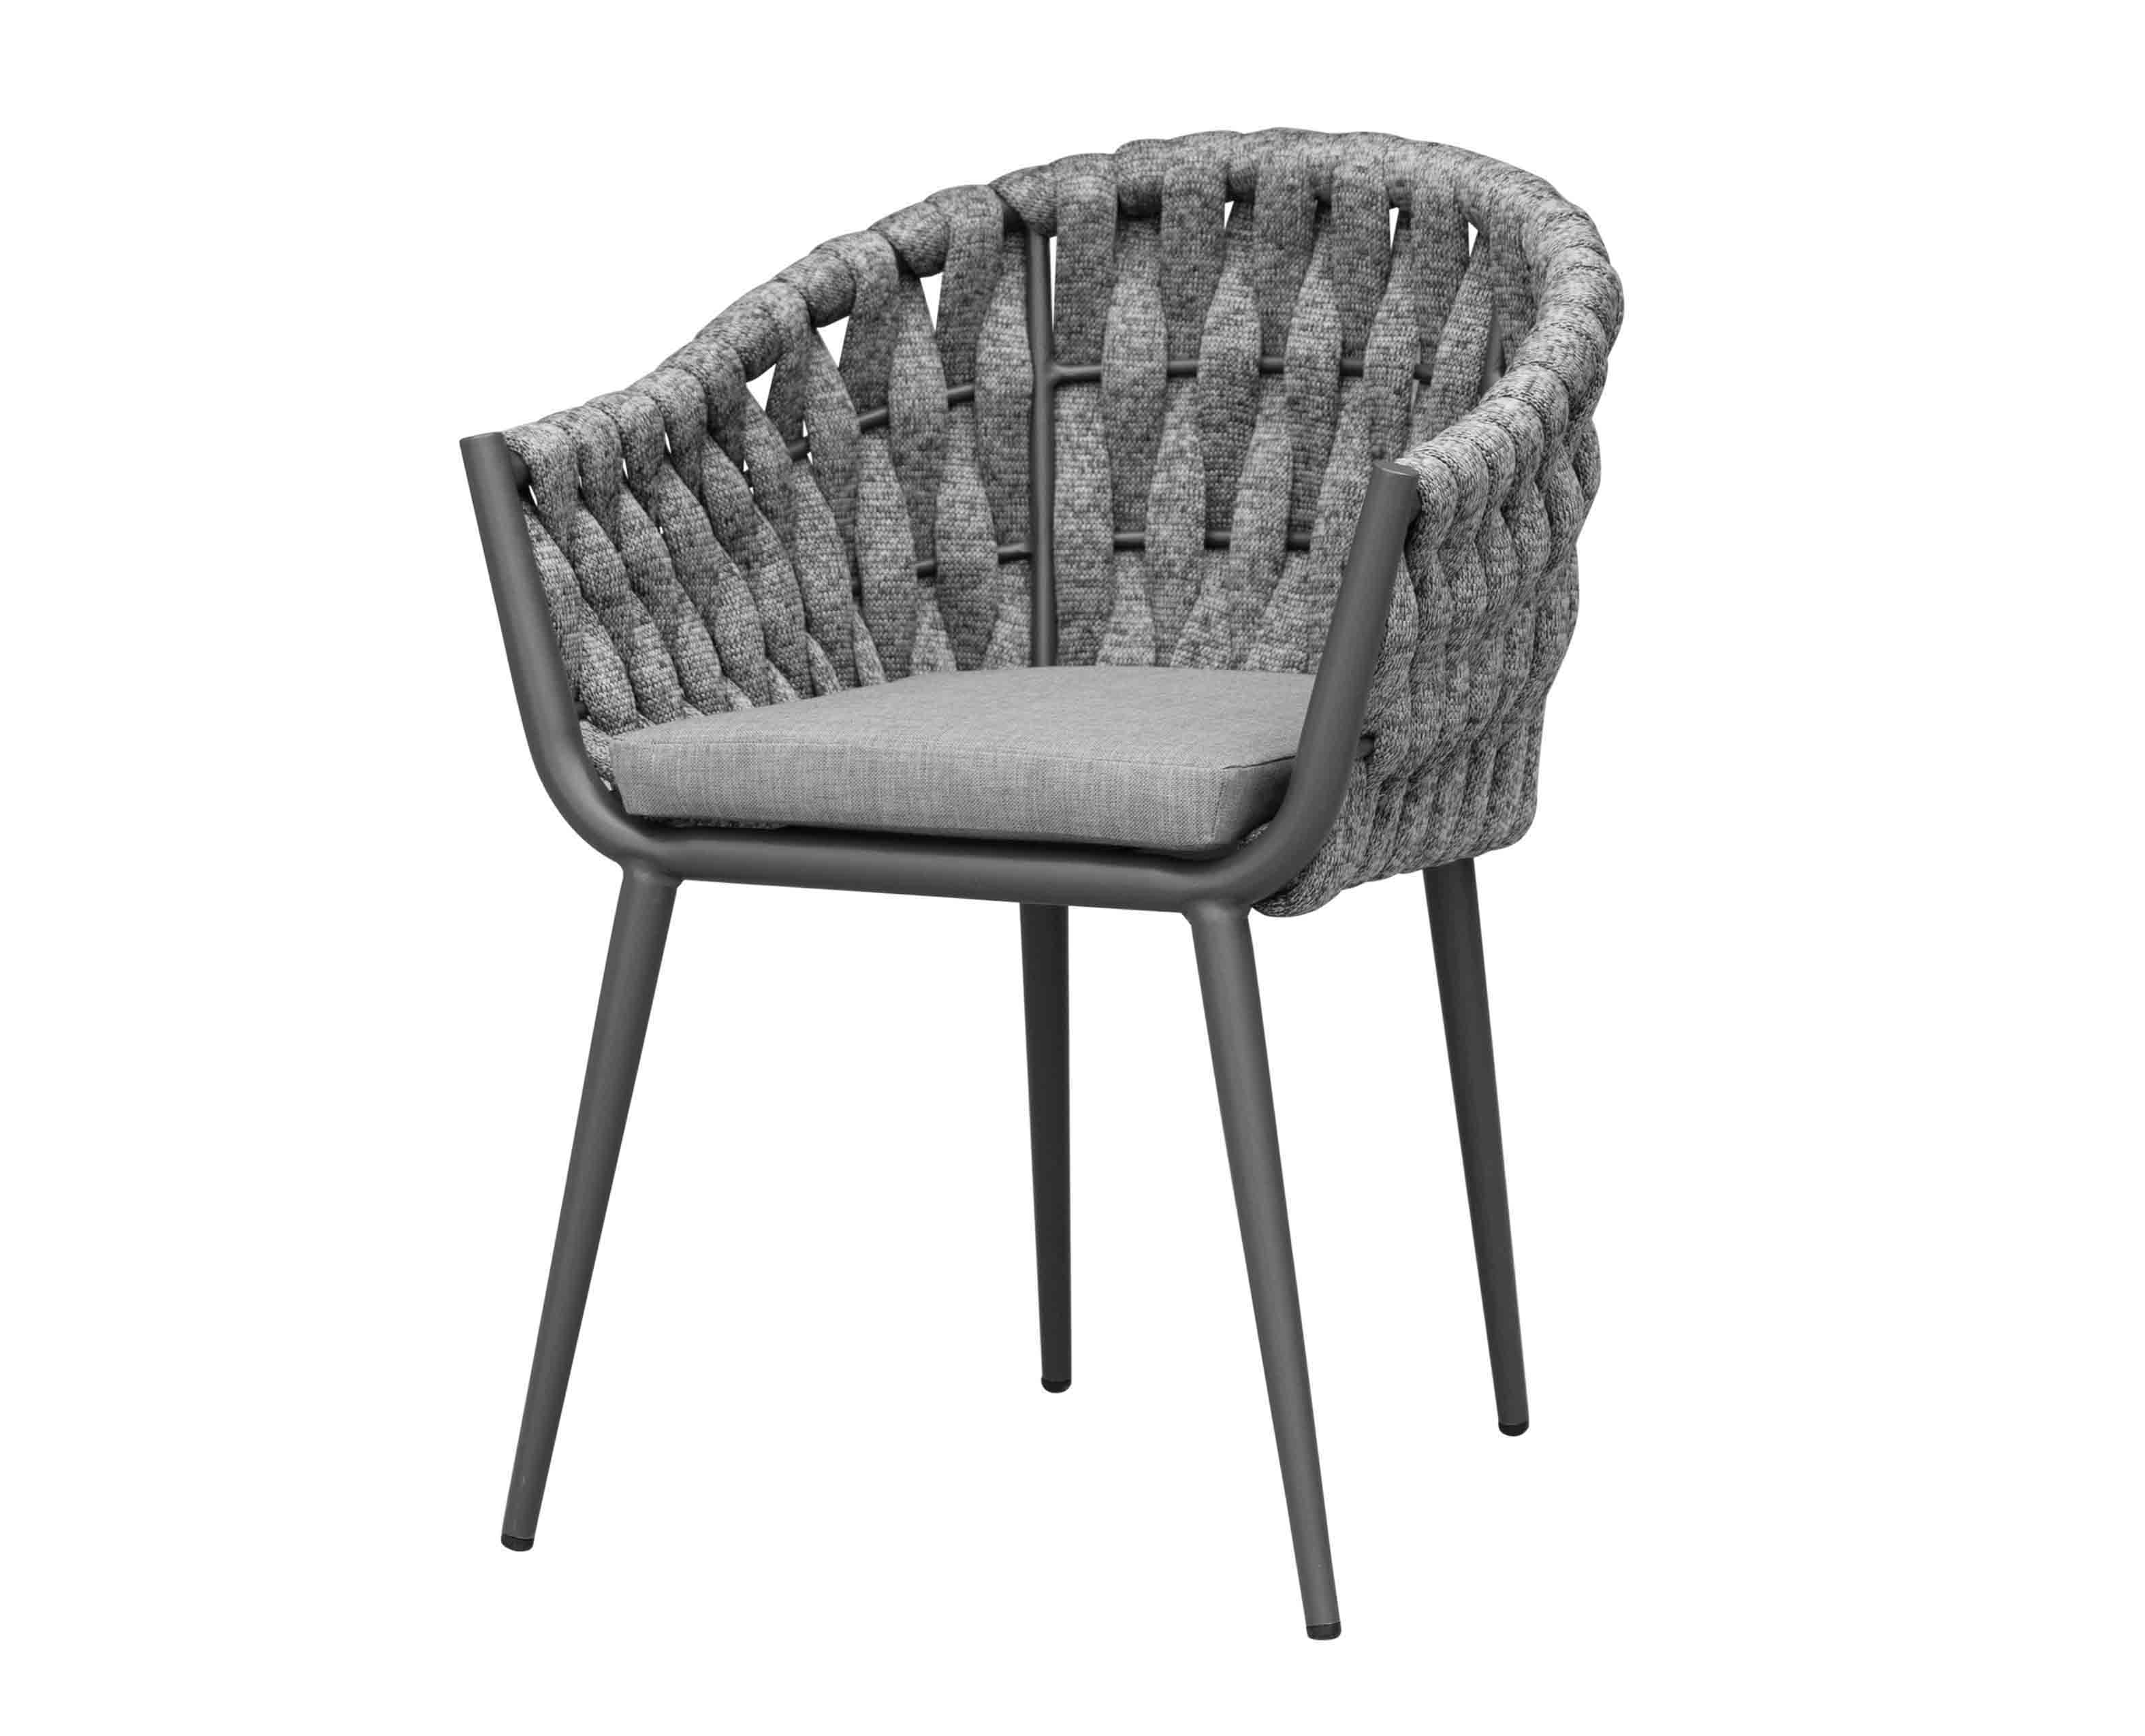 Art dining chair-yakasviba grey